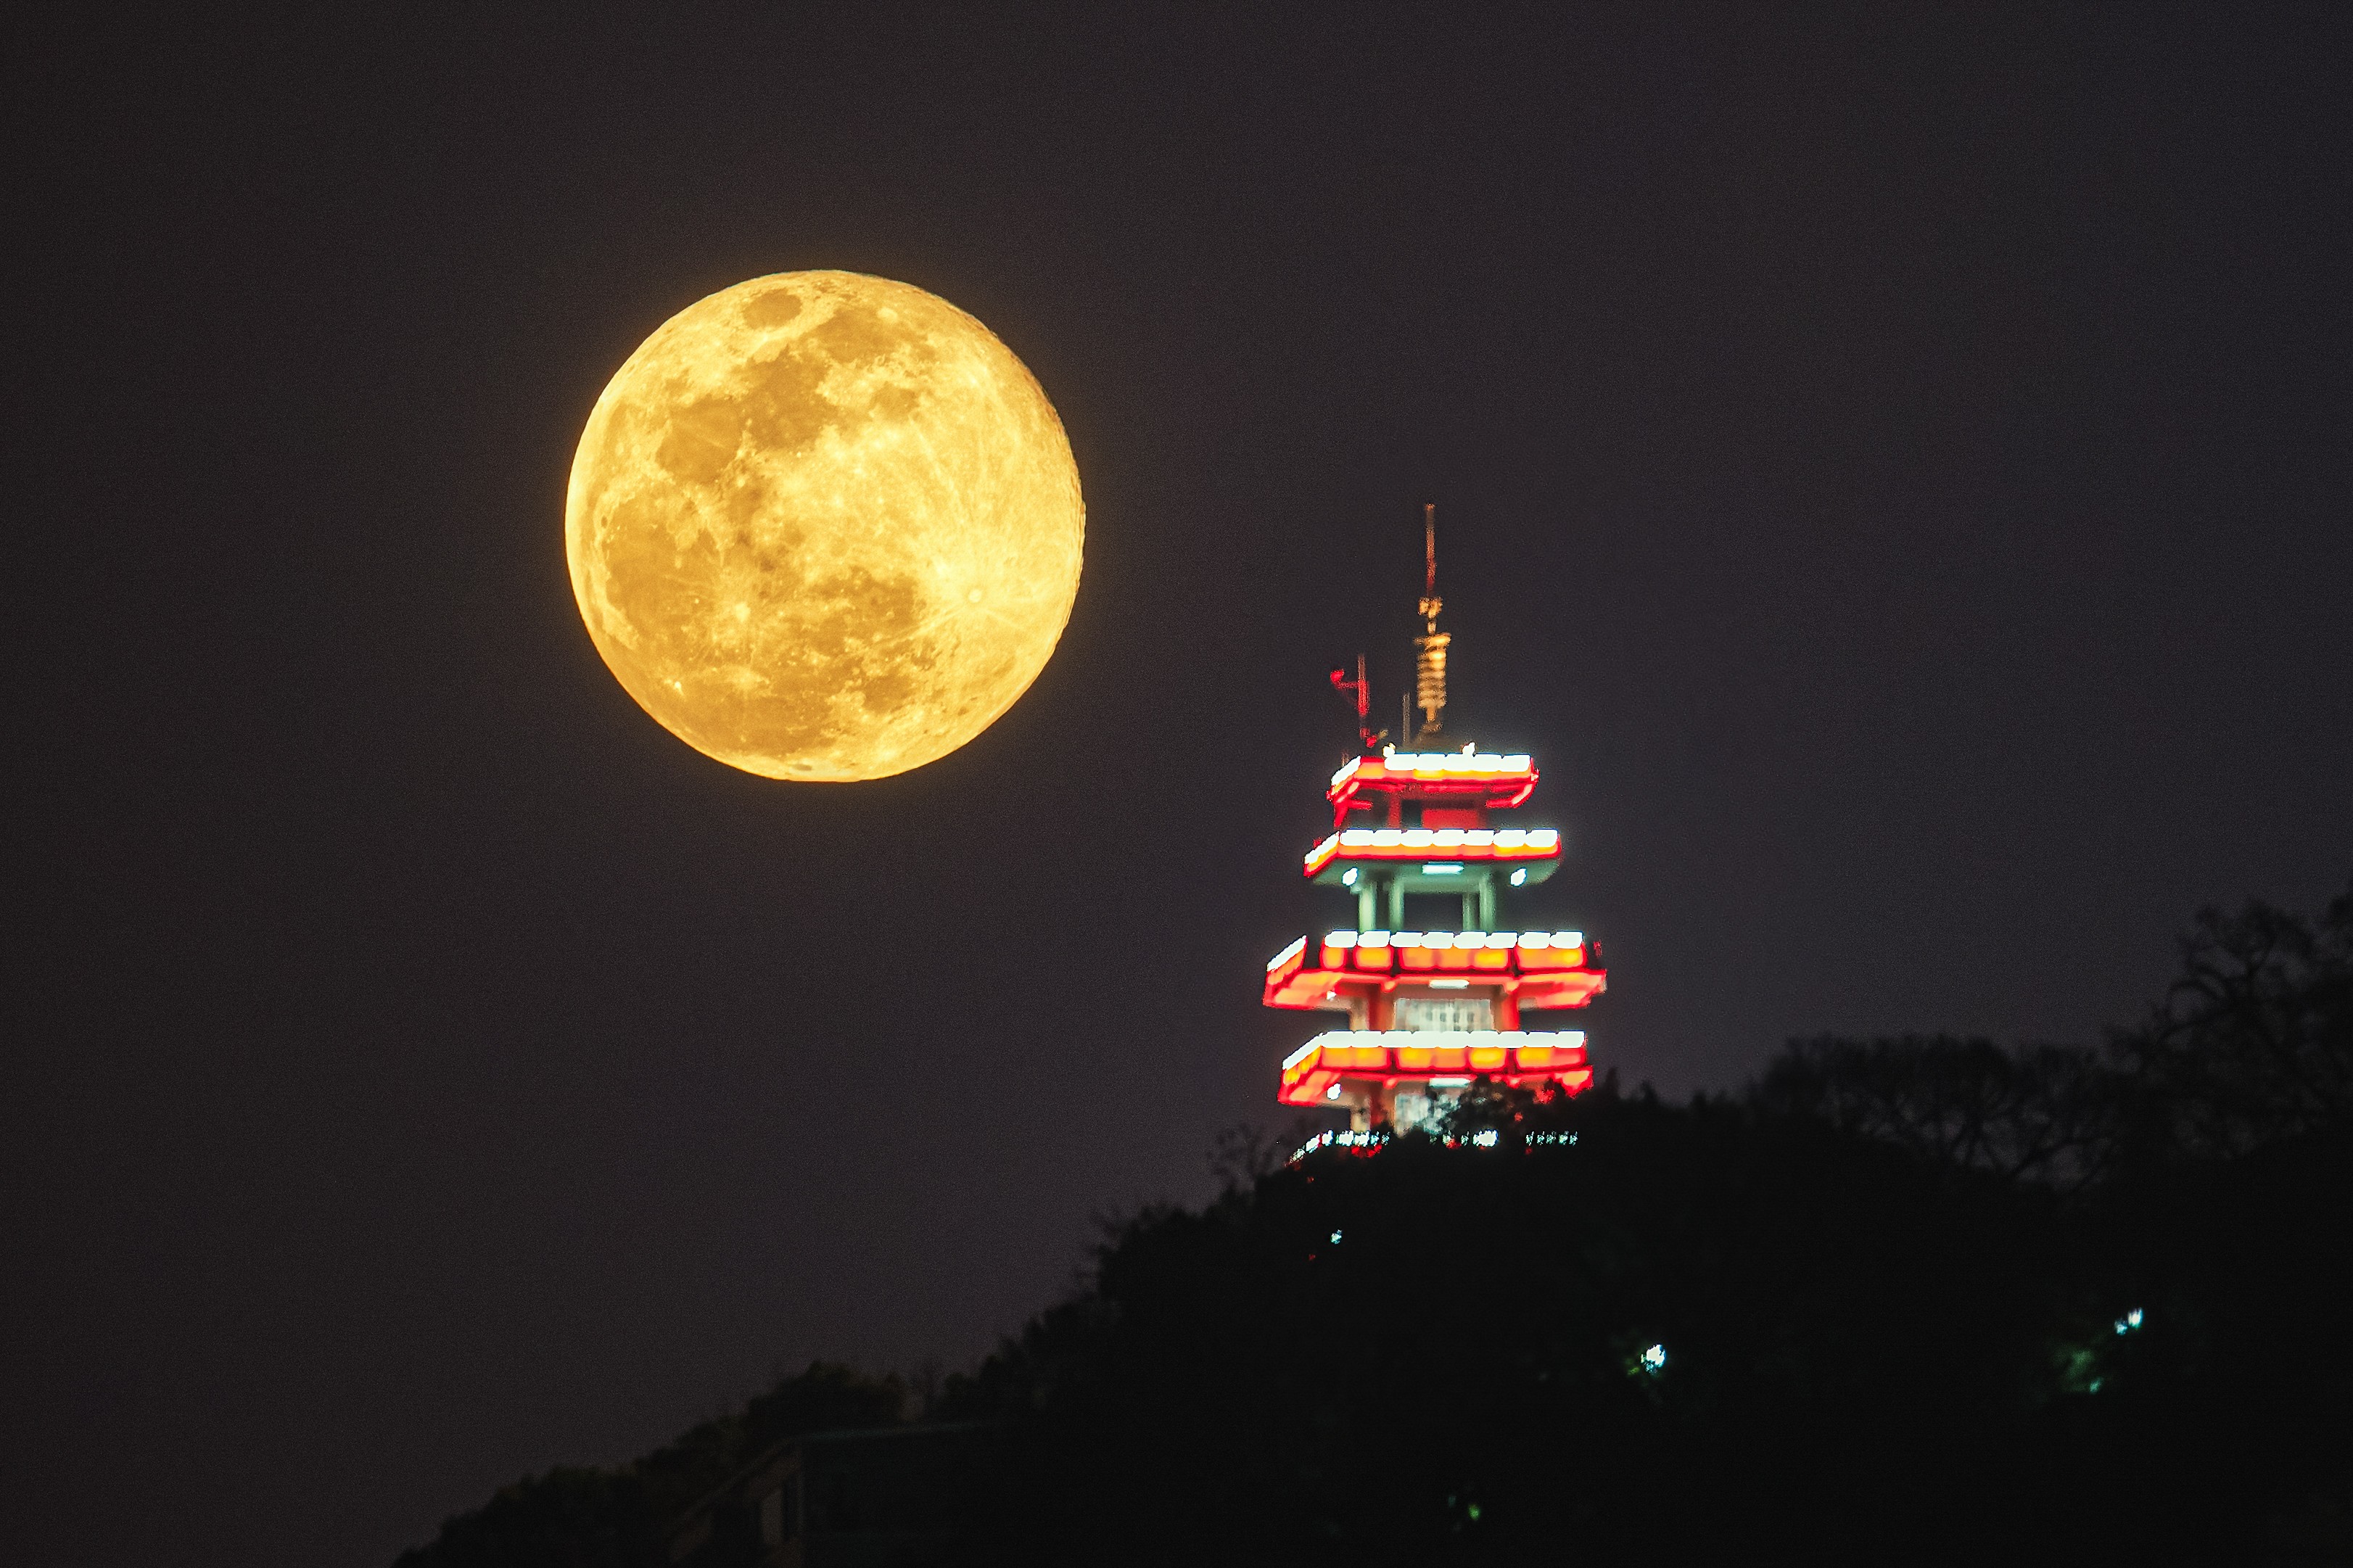 4月27日晚,夜空将出现今年第一次超级月亮